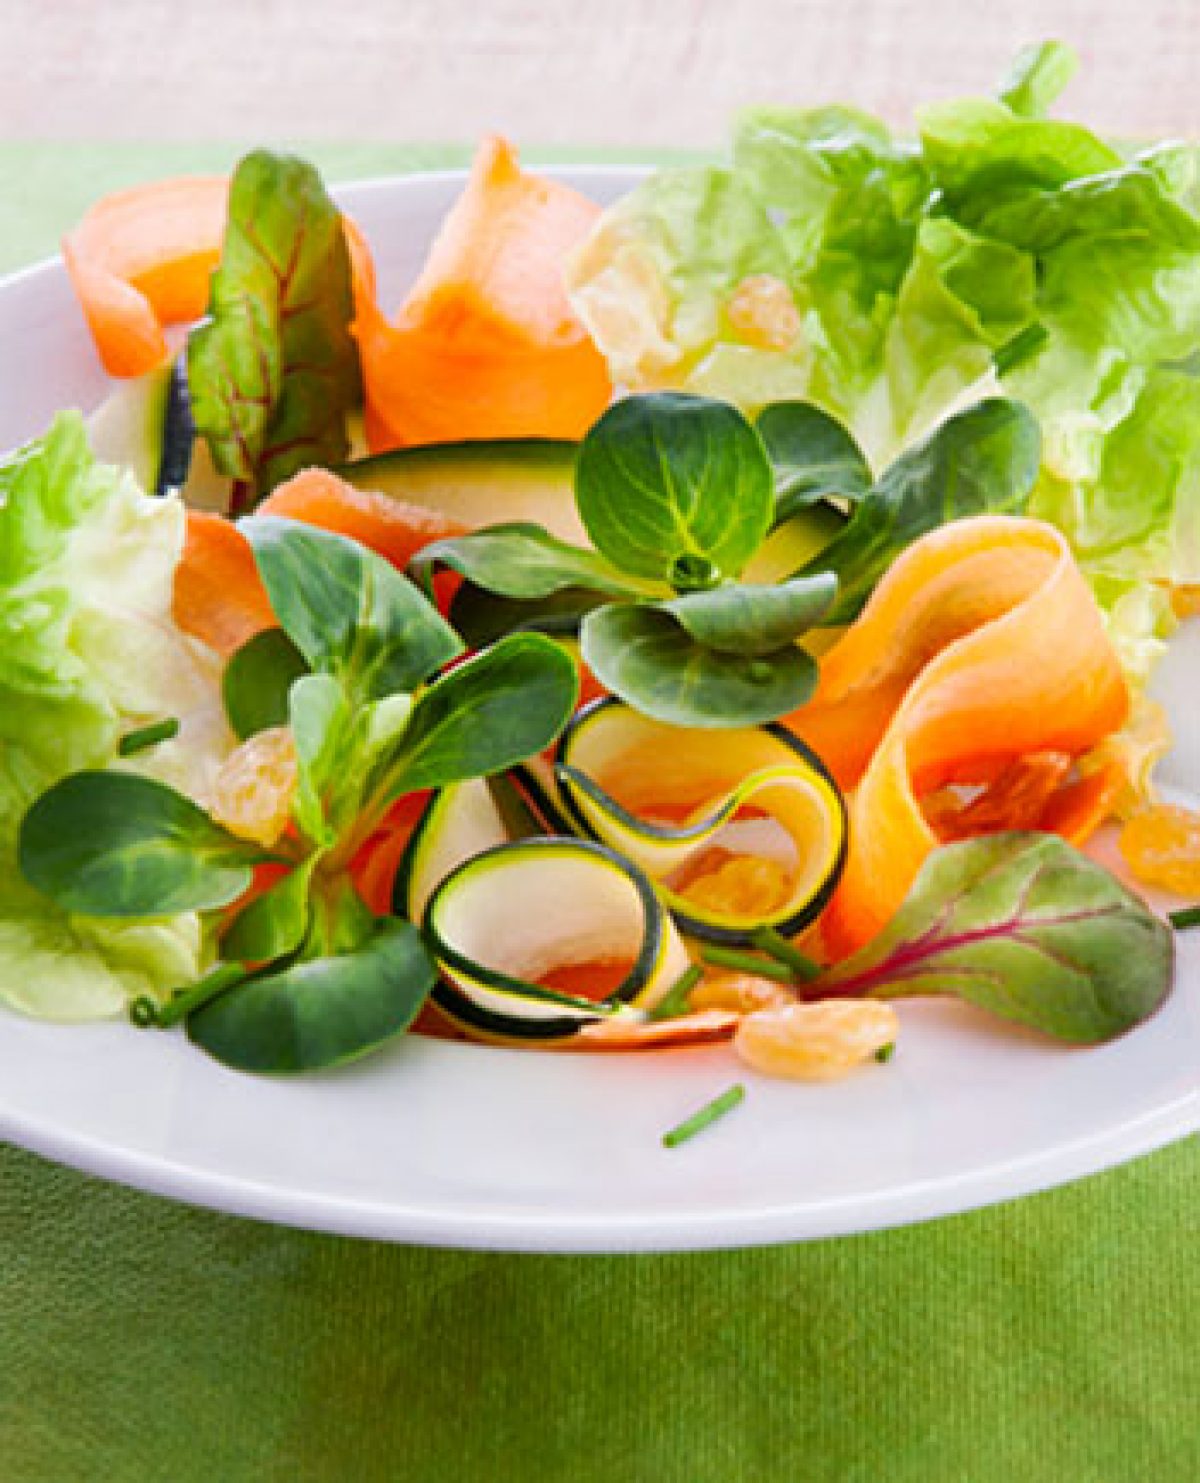 Salade pousses d'épinards, carottes et orange